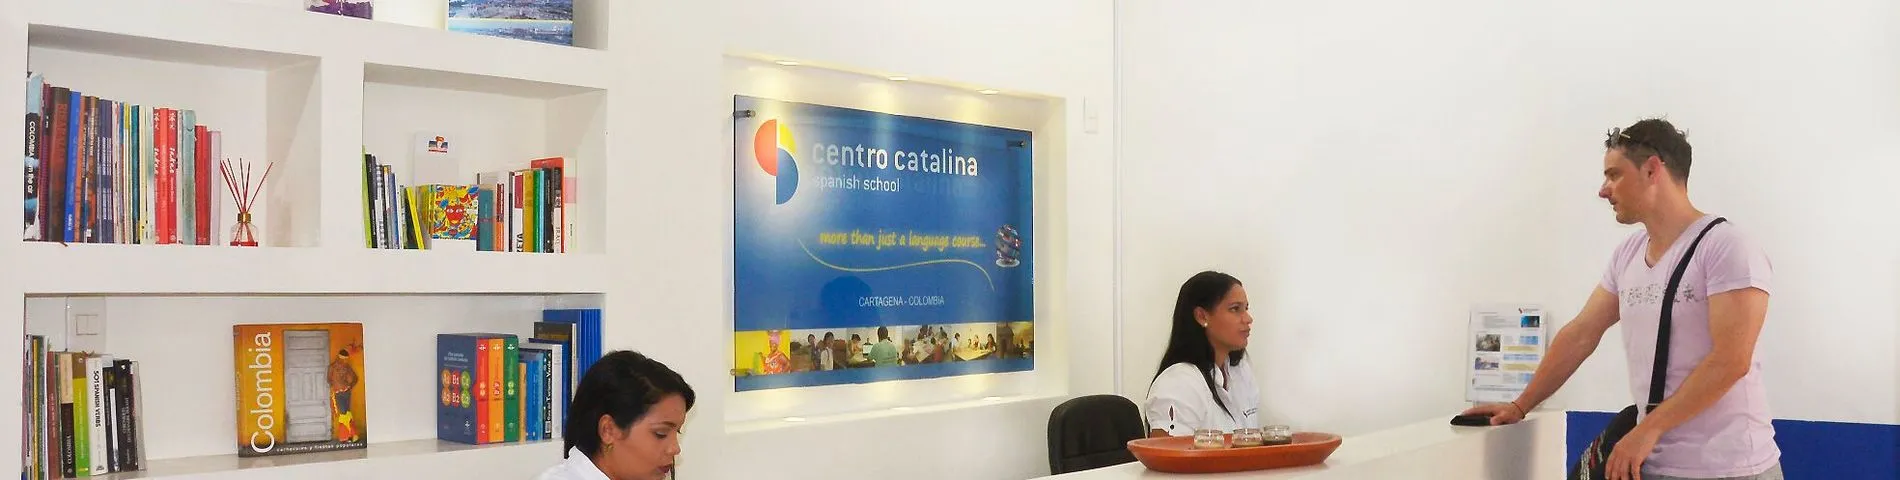 Centro Catalina صورة 1